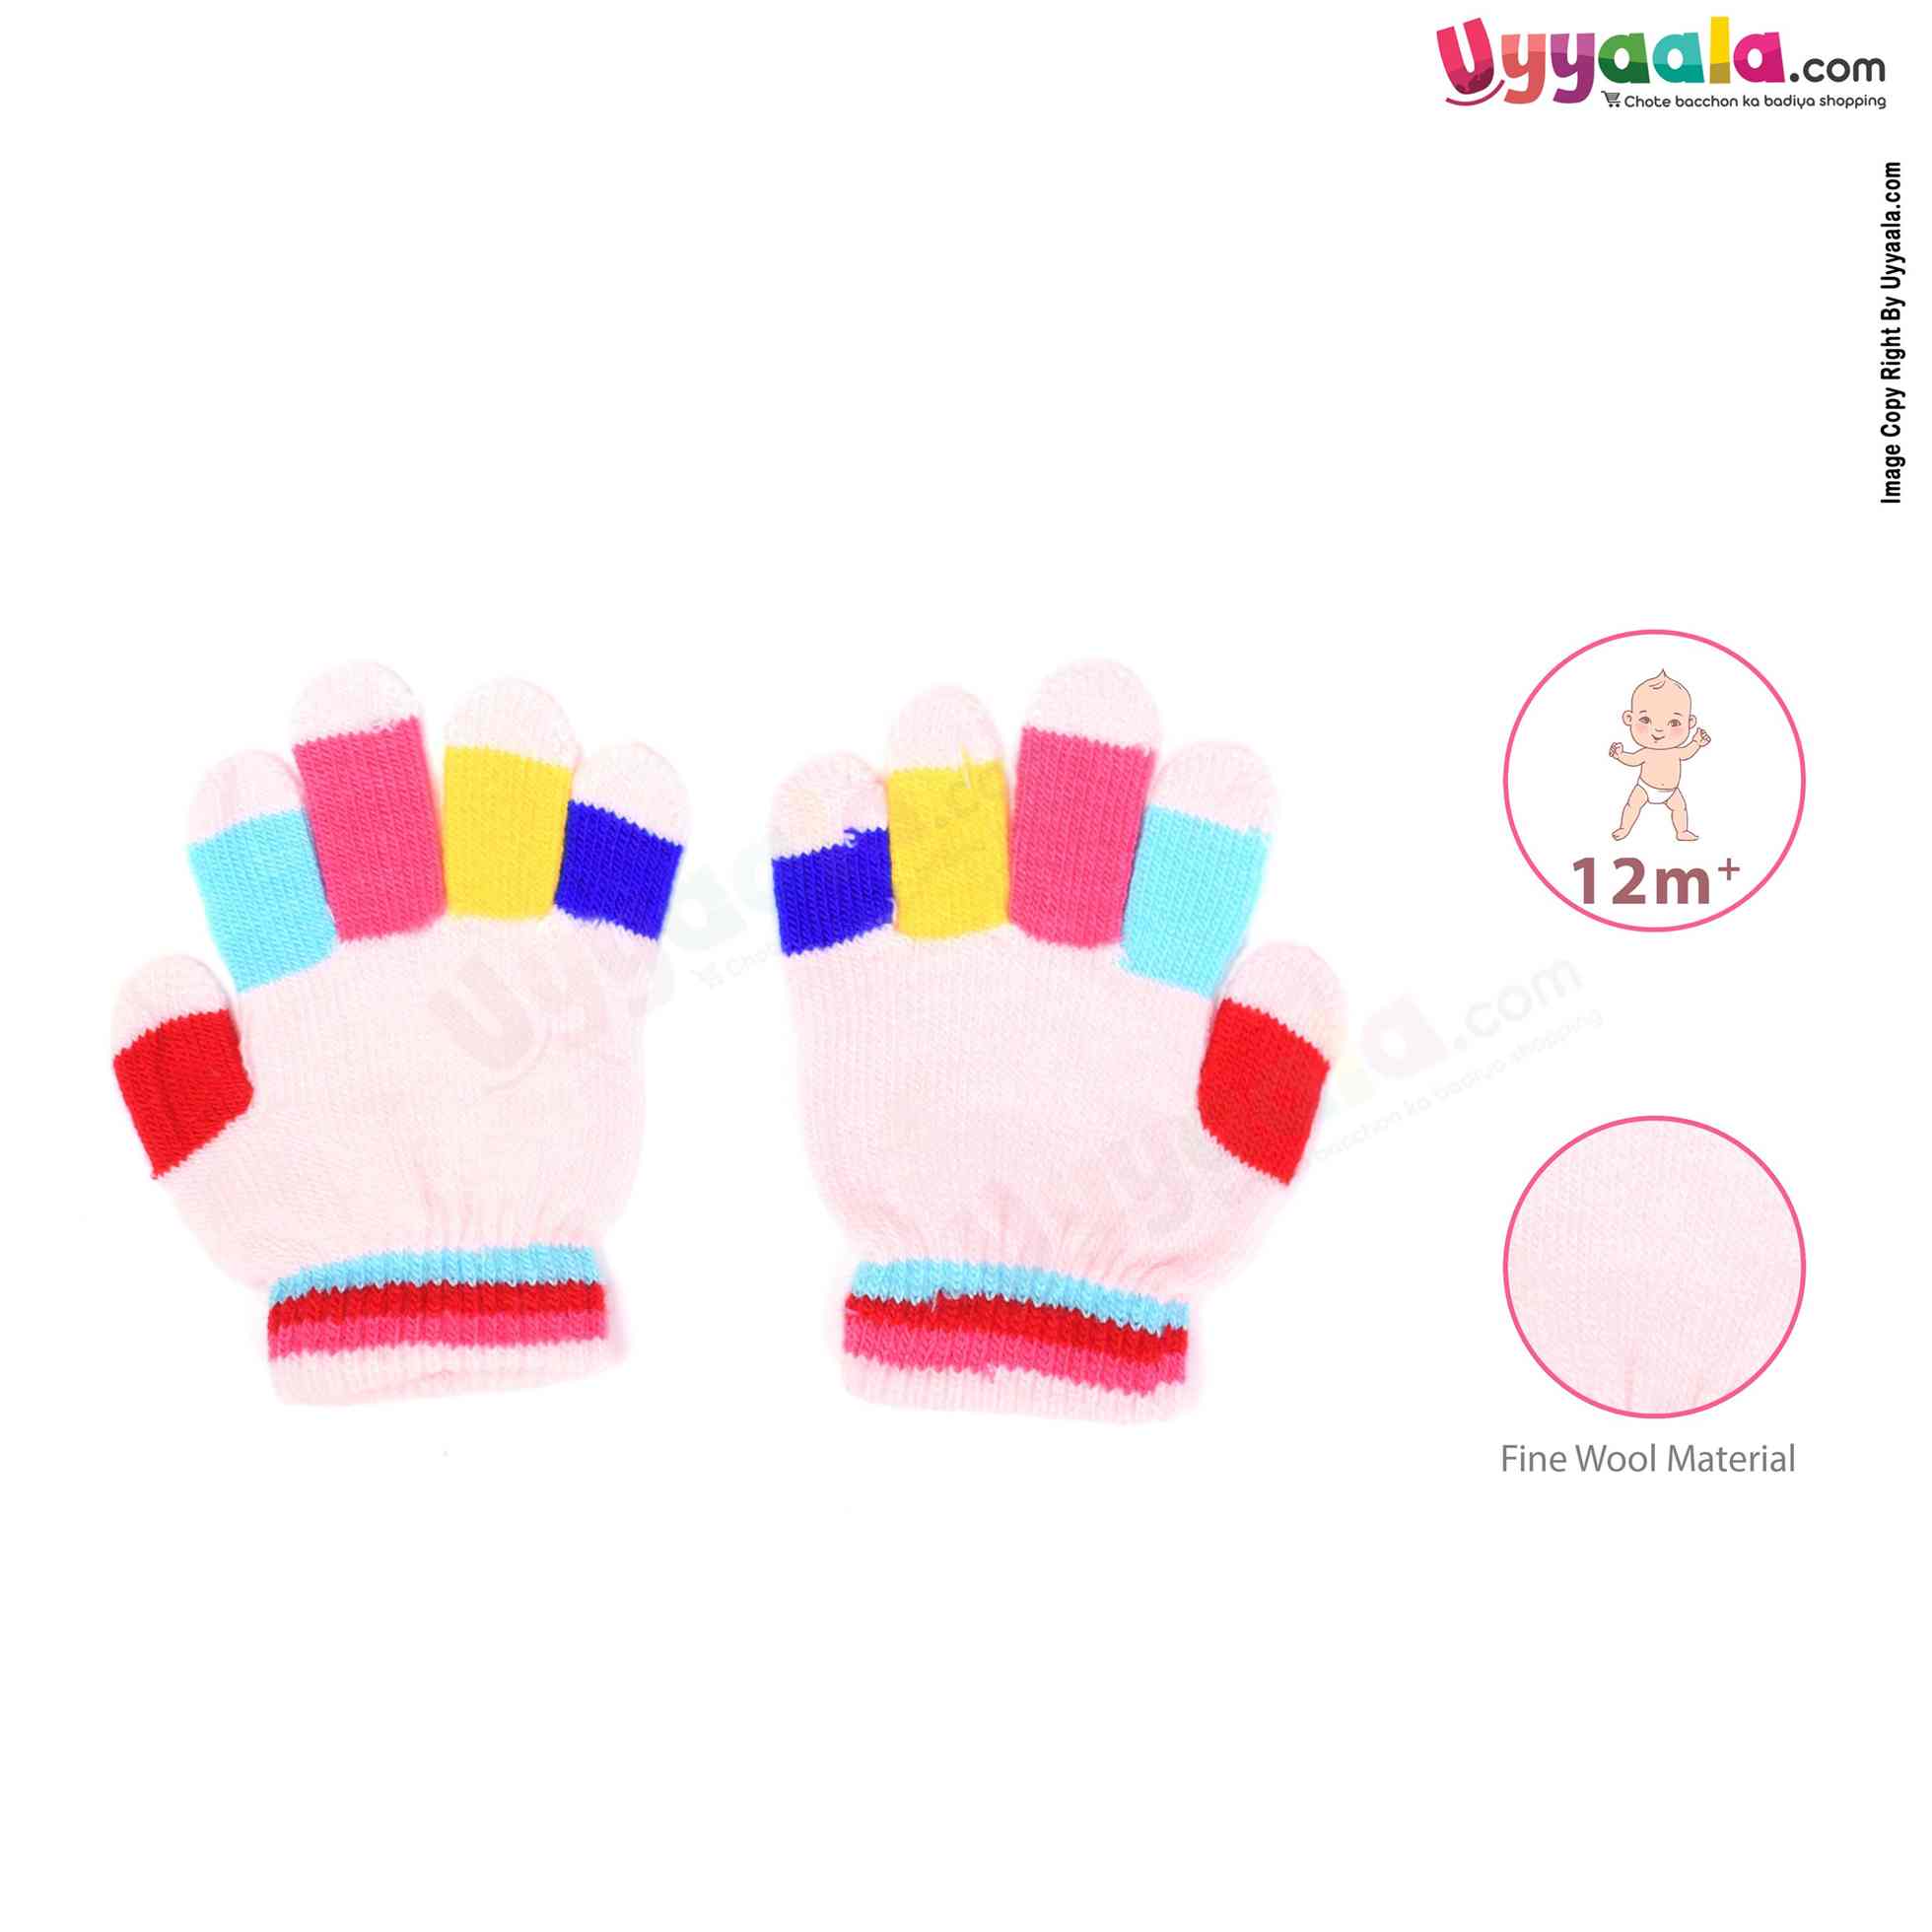 Hand Gloves for kids